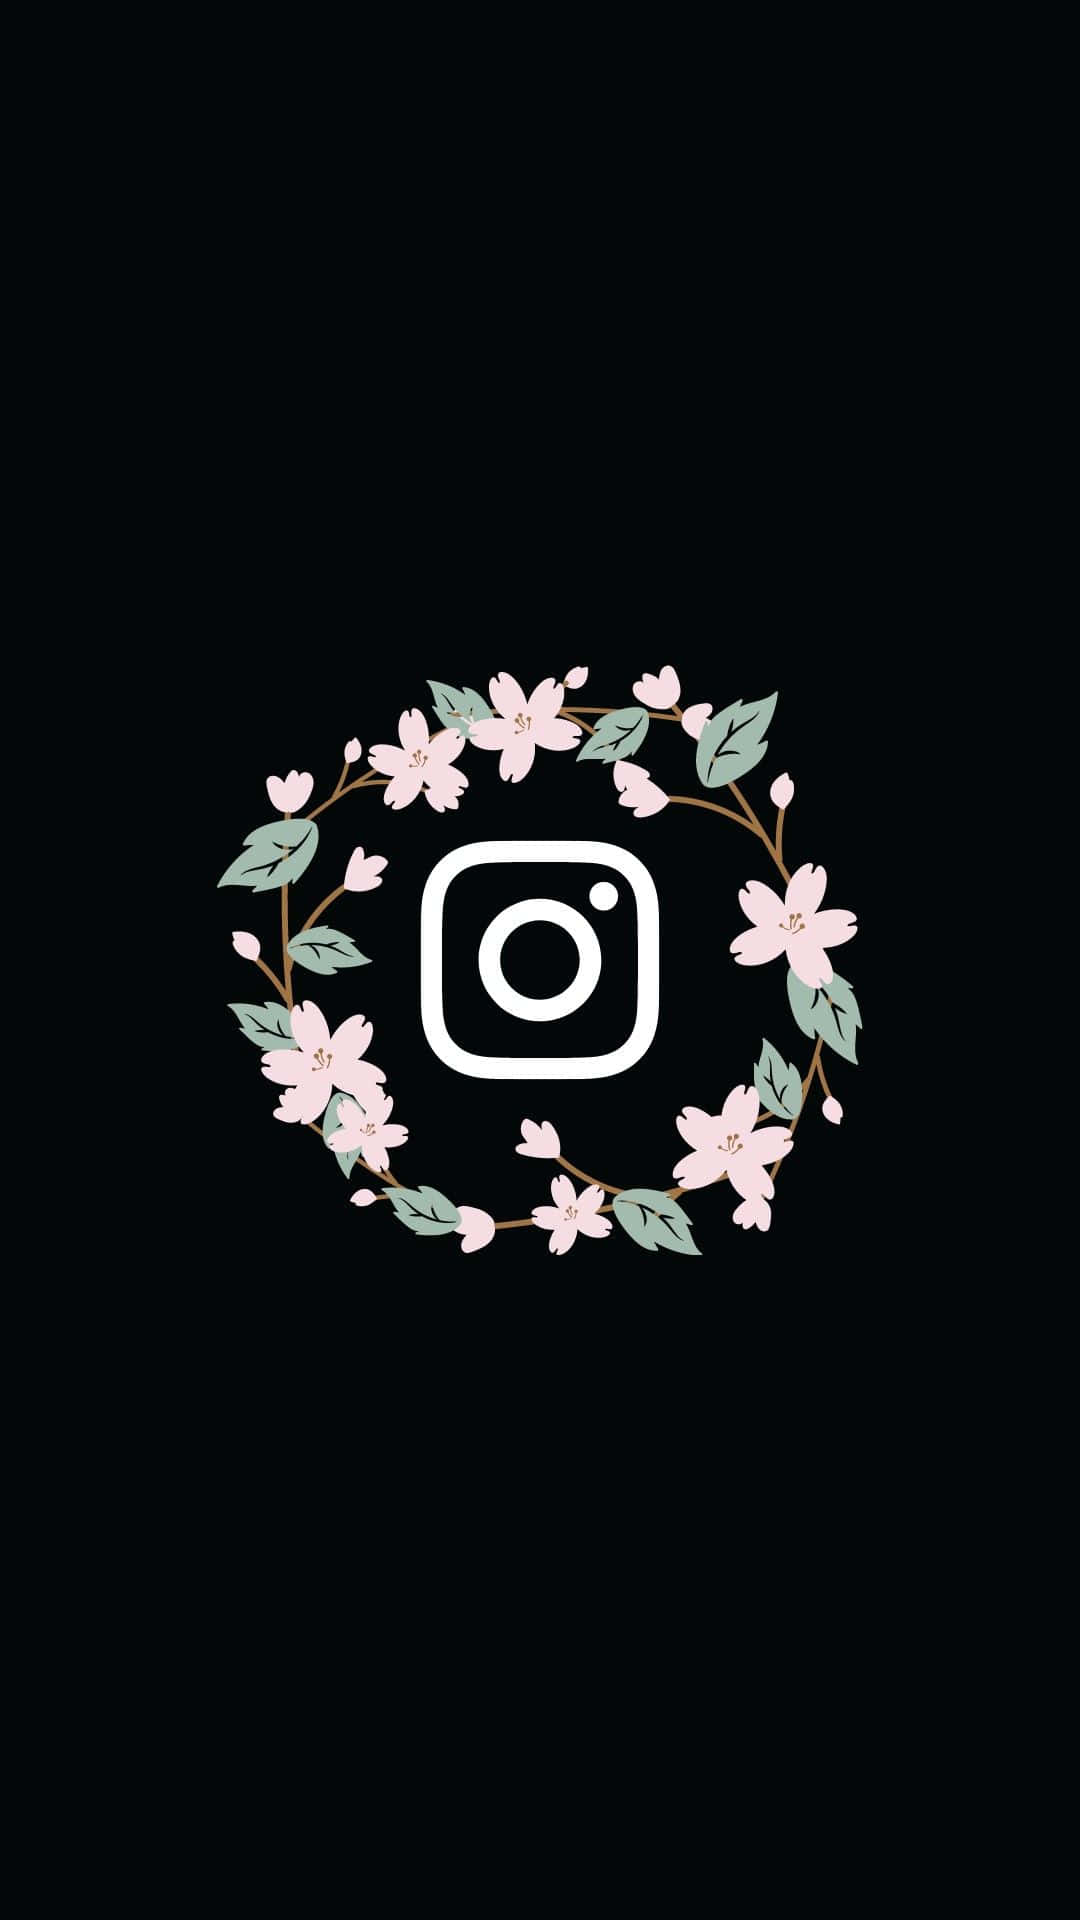 Logode Instagram Con Corona De Flores Sobre Fondo Negro.